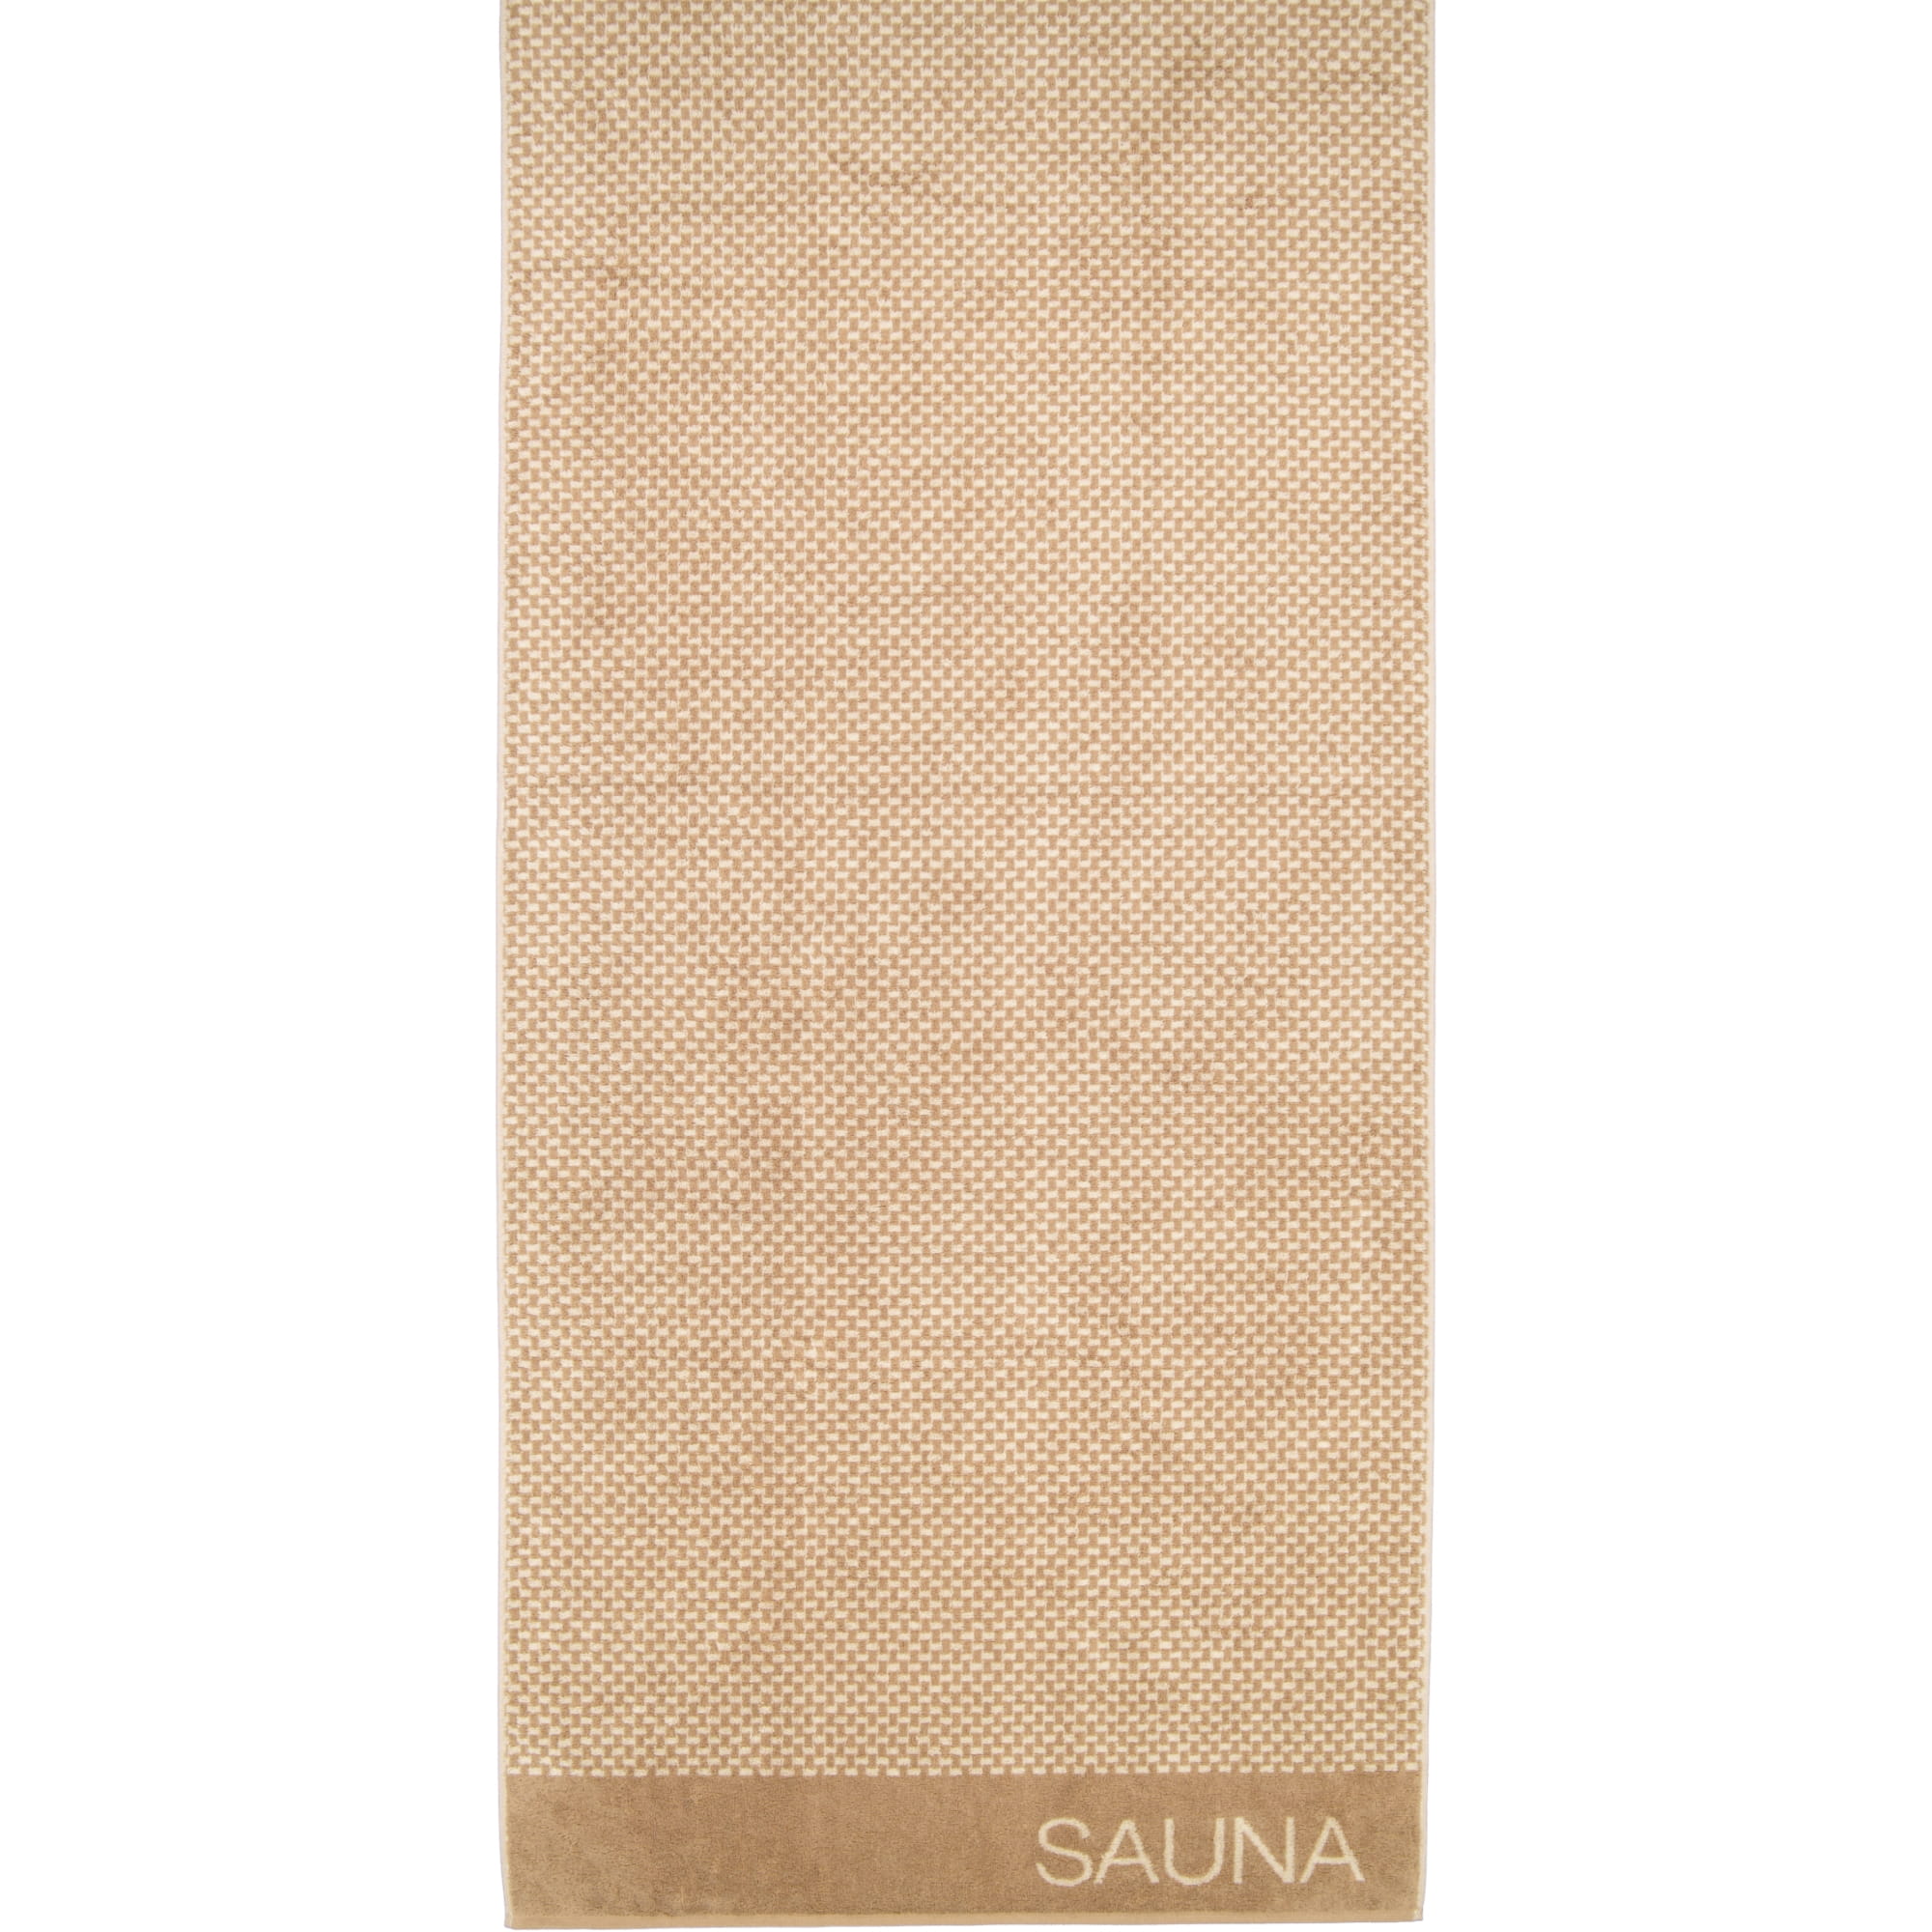 Cawö Saunatuch Natural Allover 6220 80x200 cm - Farbe: natur-caramel - 33 |  Alle Artikel | Handtücher | Cawö | Saunahandtücher